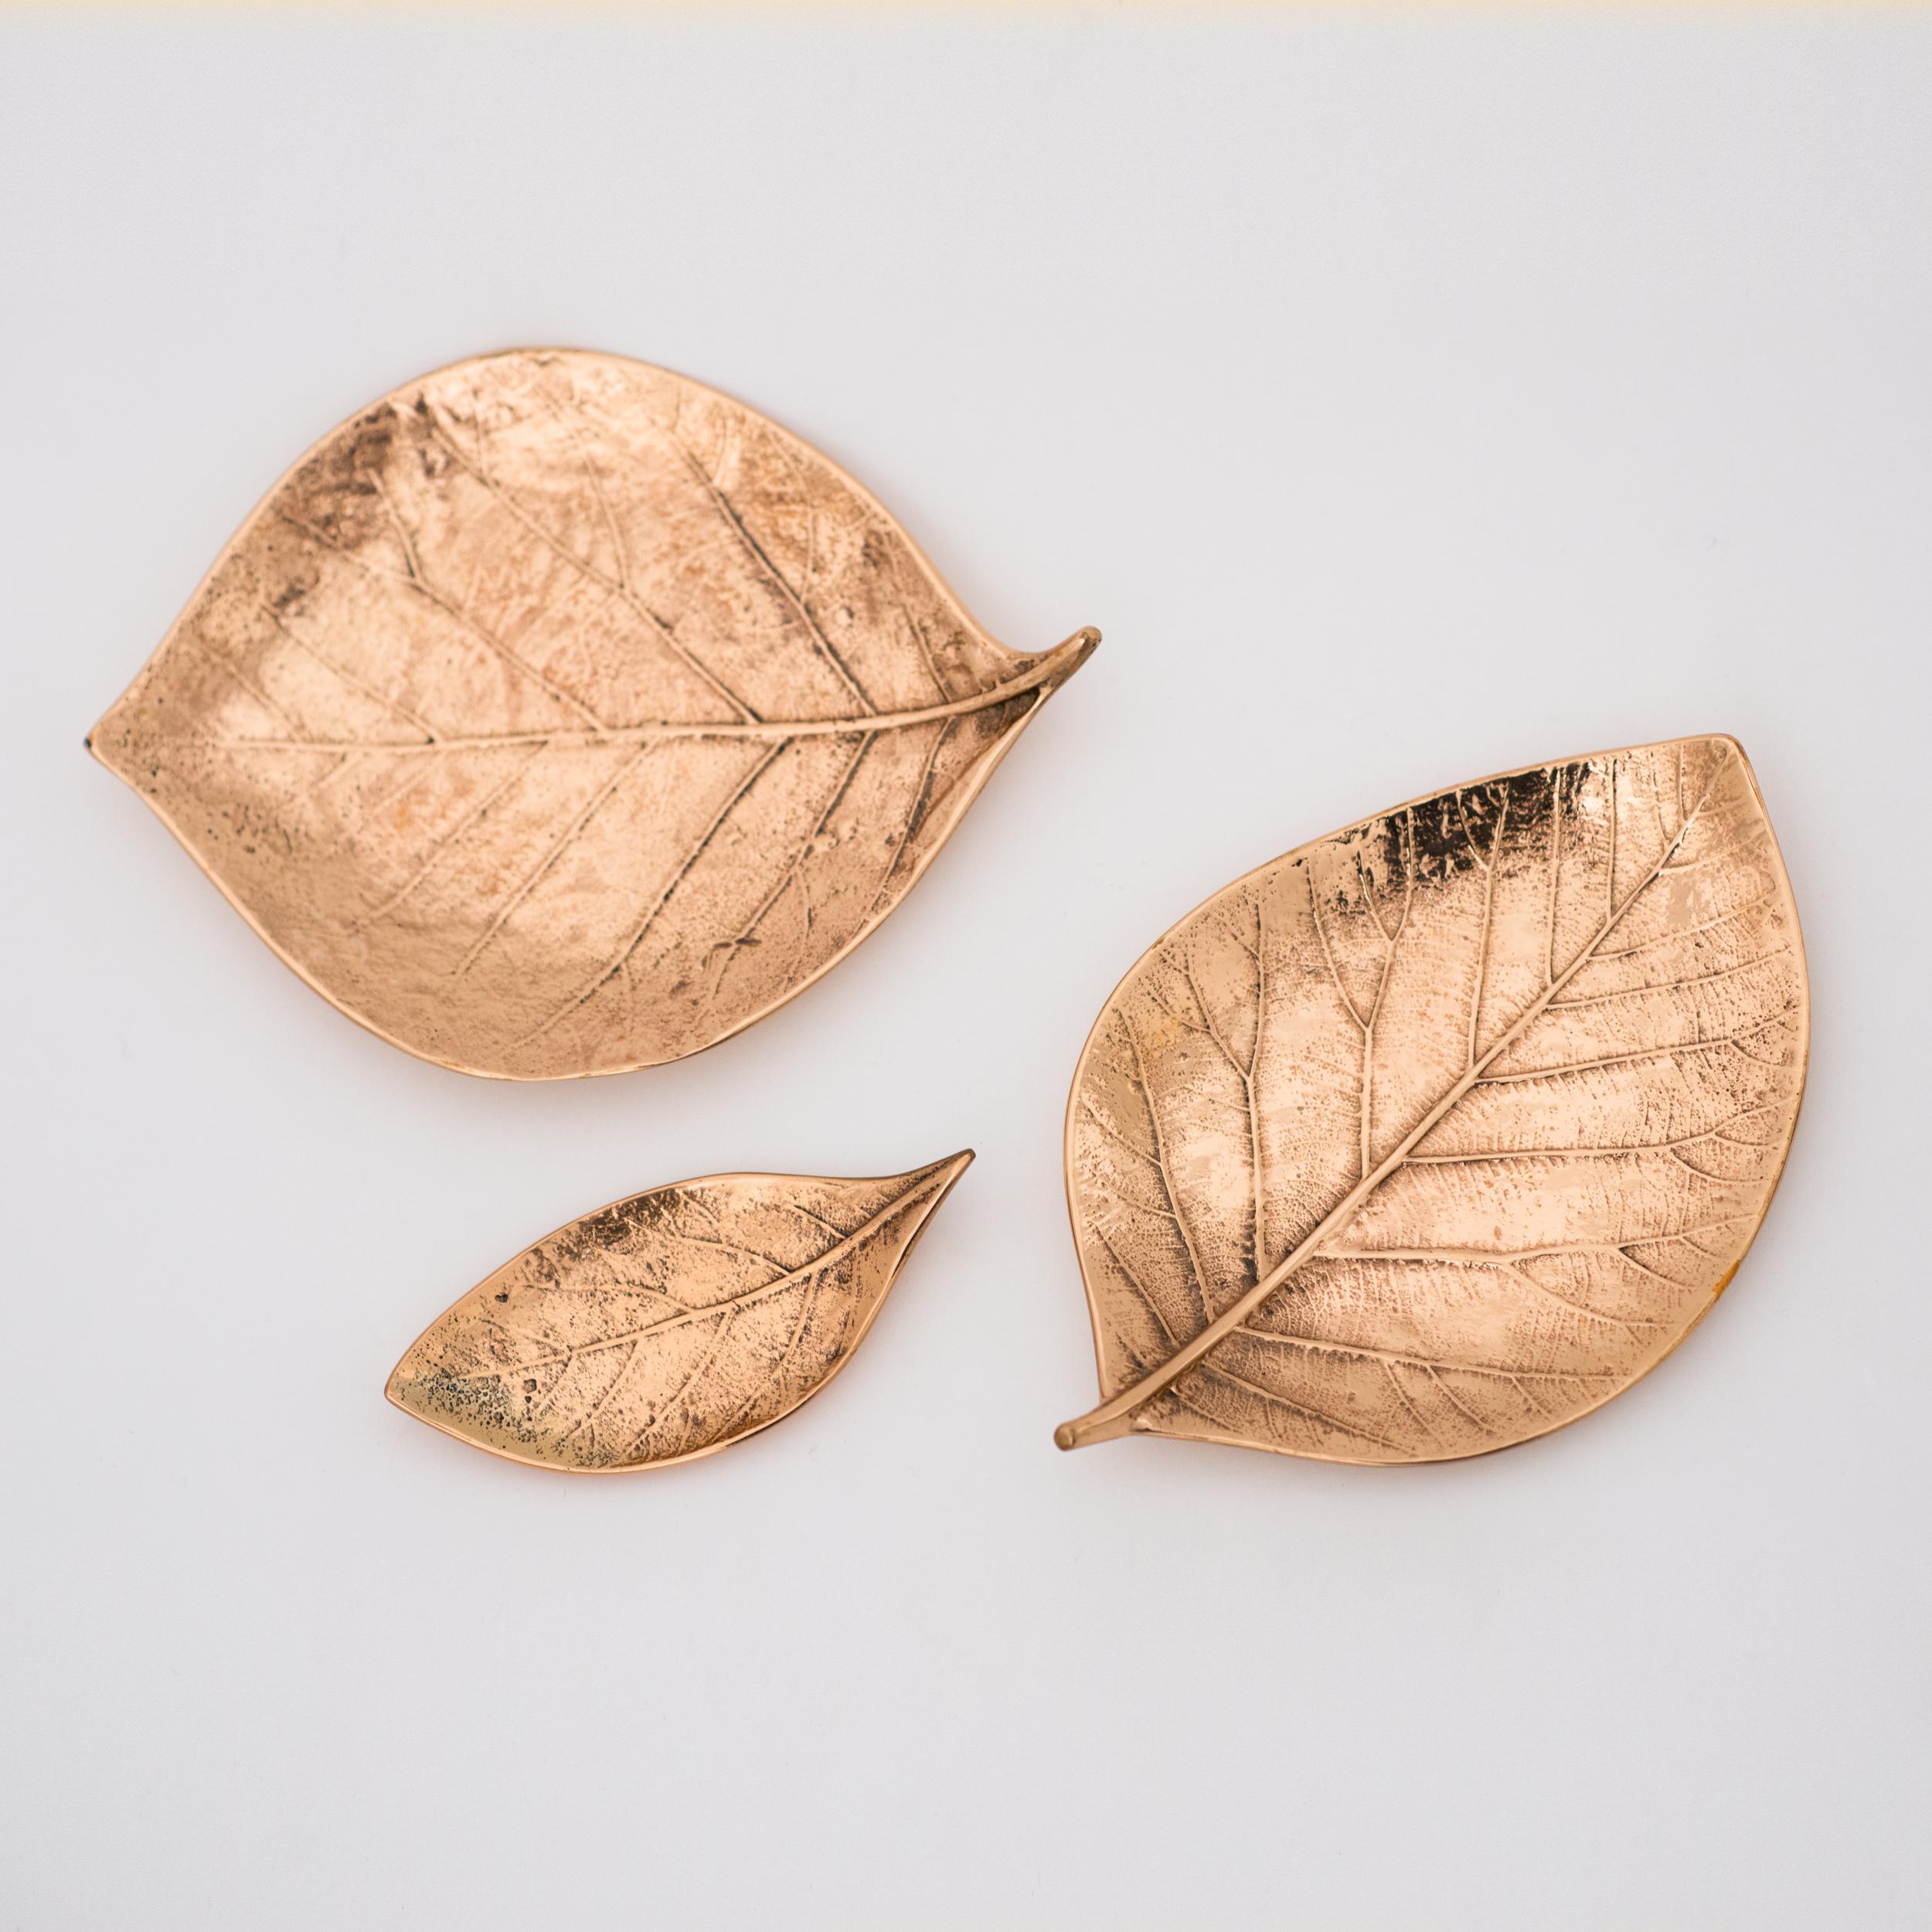 Grappe de feuilles de bronze. Chacune de ces splendides feuilles de bronze est fabriquée à la main, individuellement, avec un niveau de détail incroyable.

Coulées selon des techniques très traditionnelles, elles sont polies pour restituer la